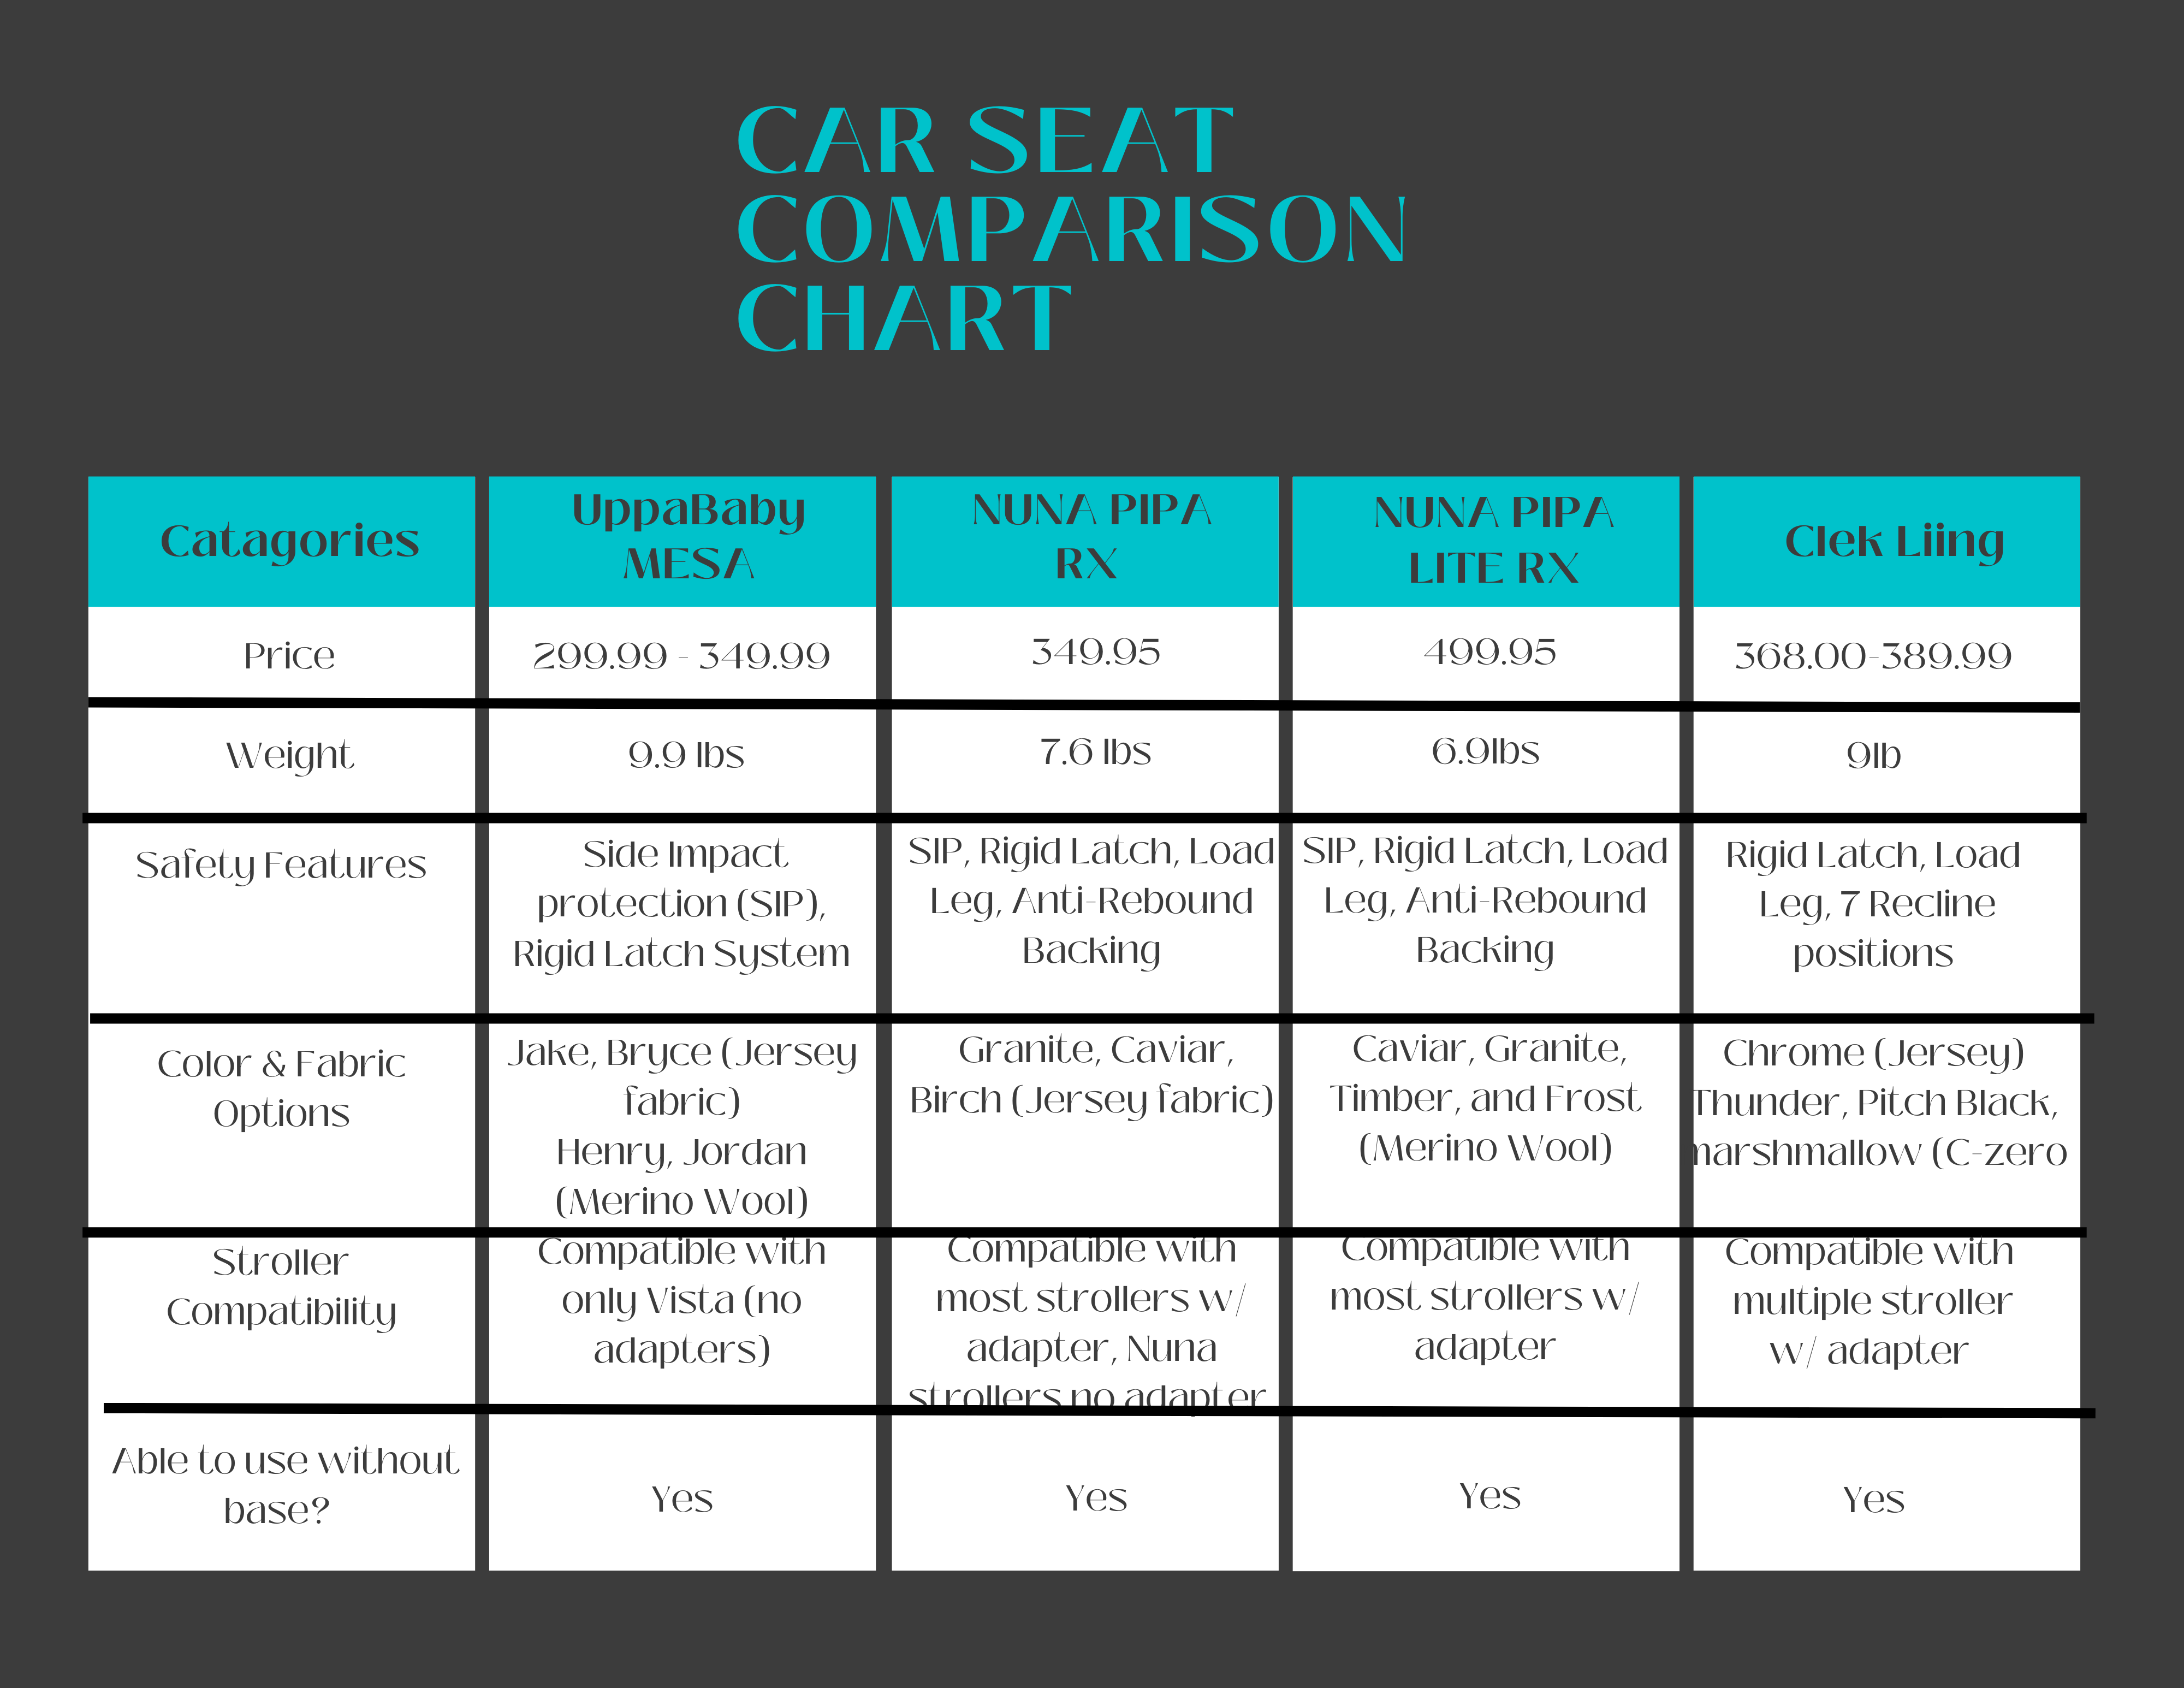 Car Seat Comparison Chart